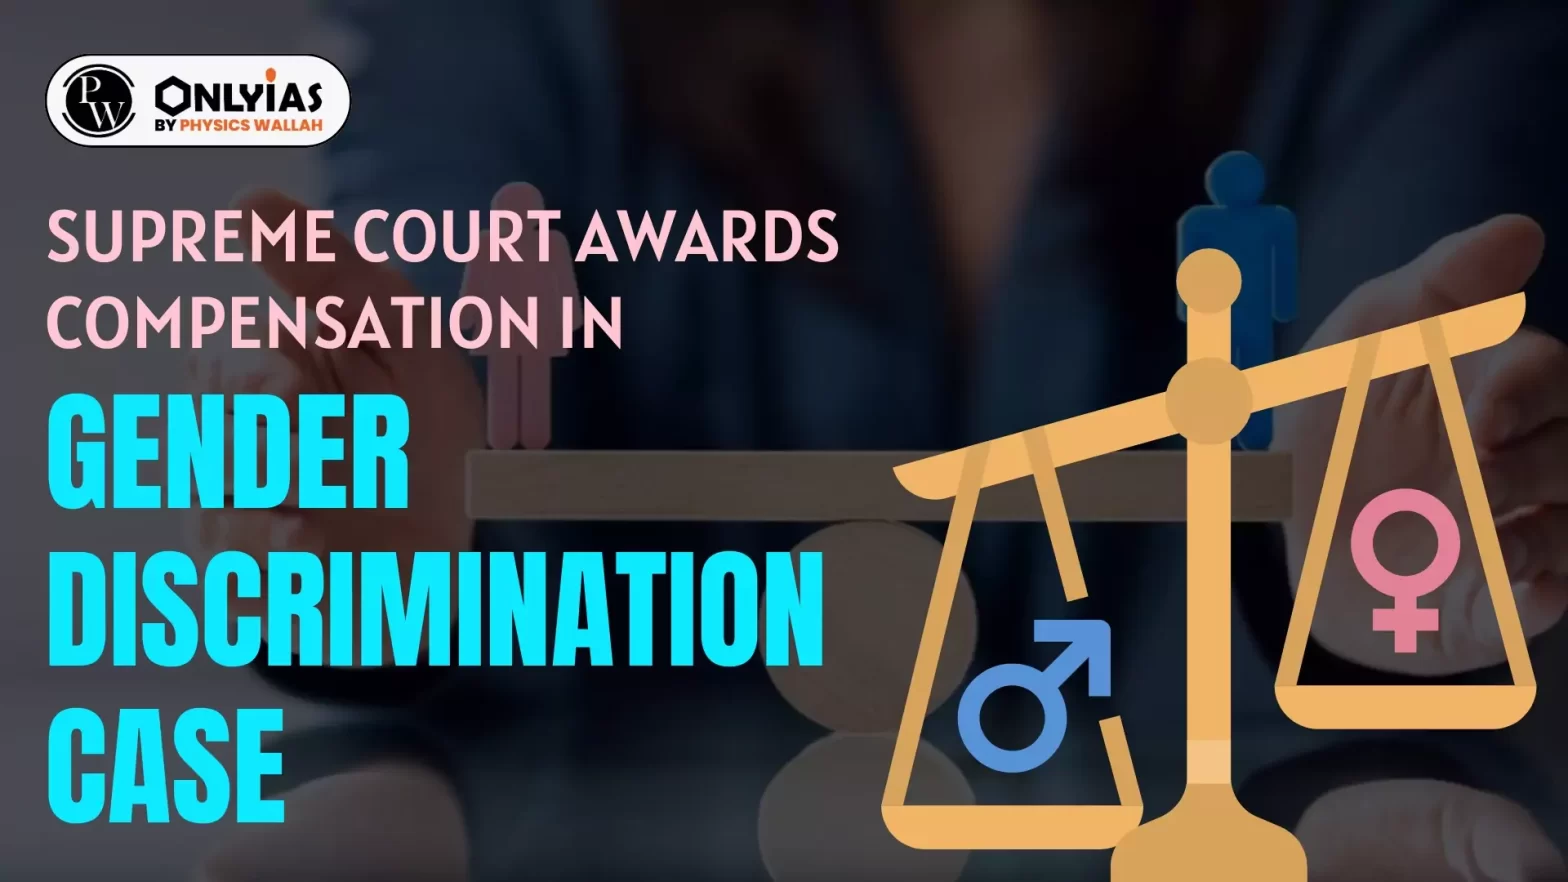 Supreme Court Awards Compensation in Gender Discrimination Case